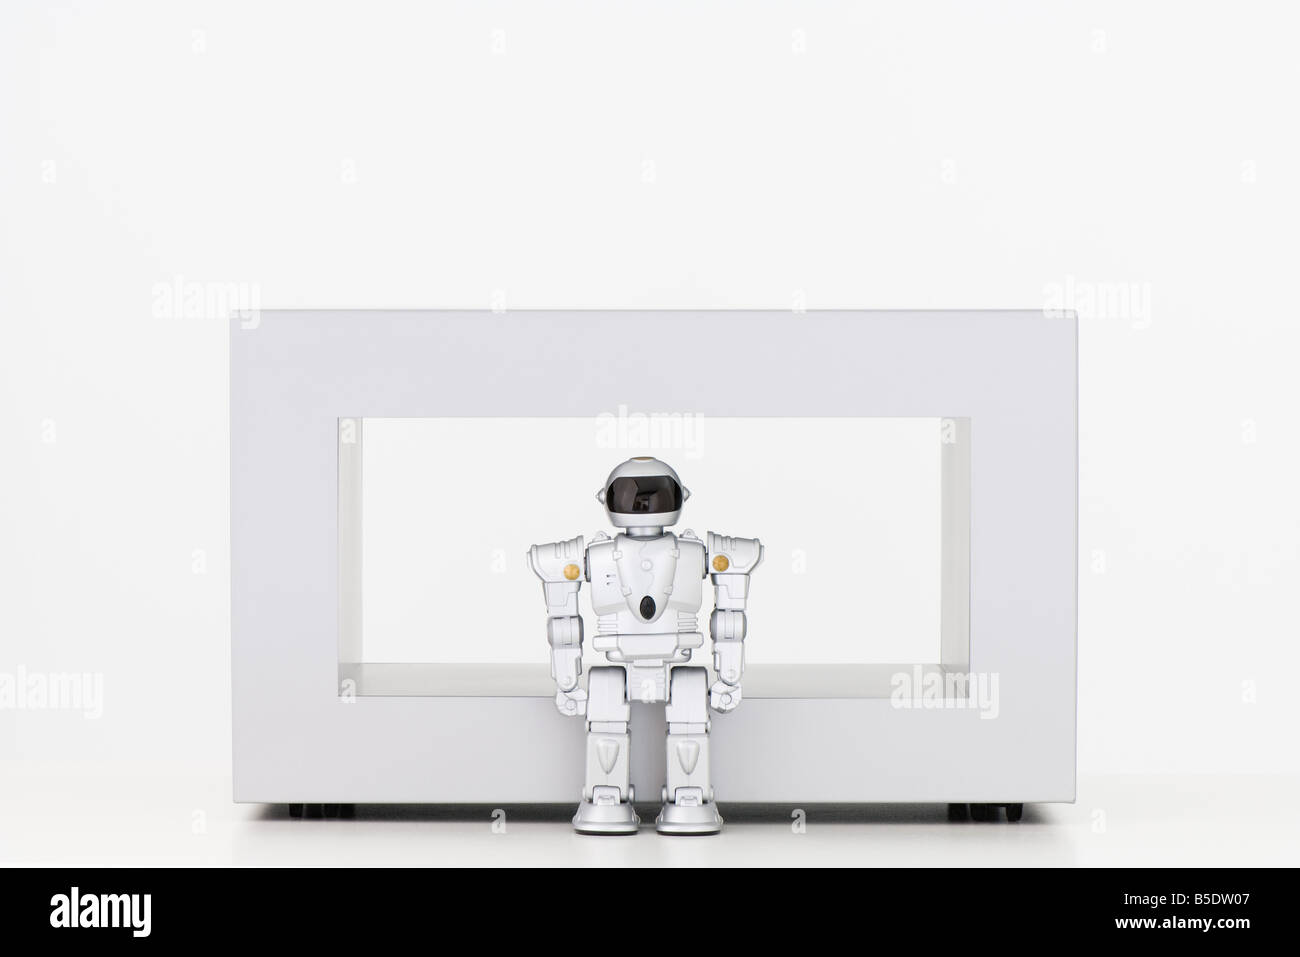 Robot jouet debout devant une table basse Banque D'Images